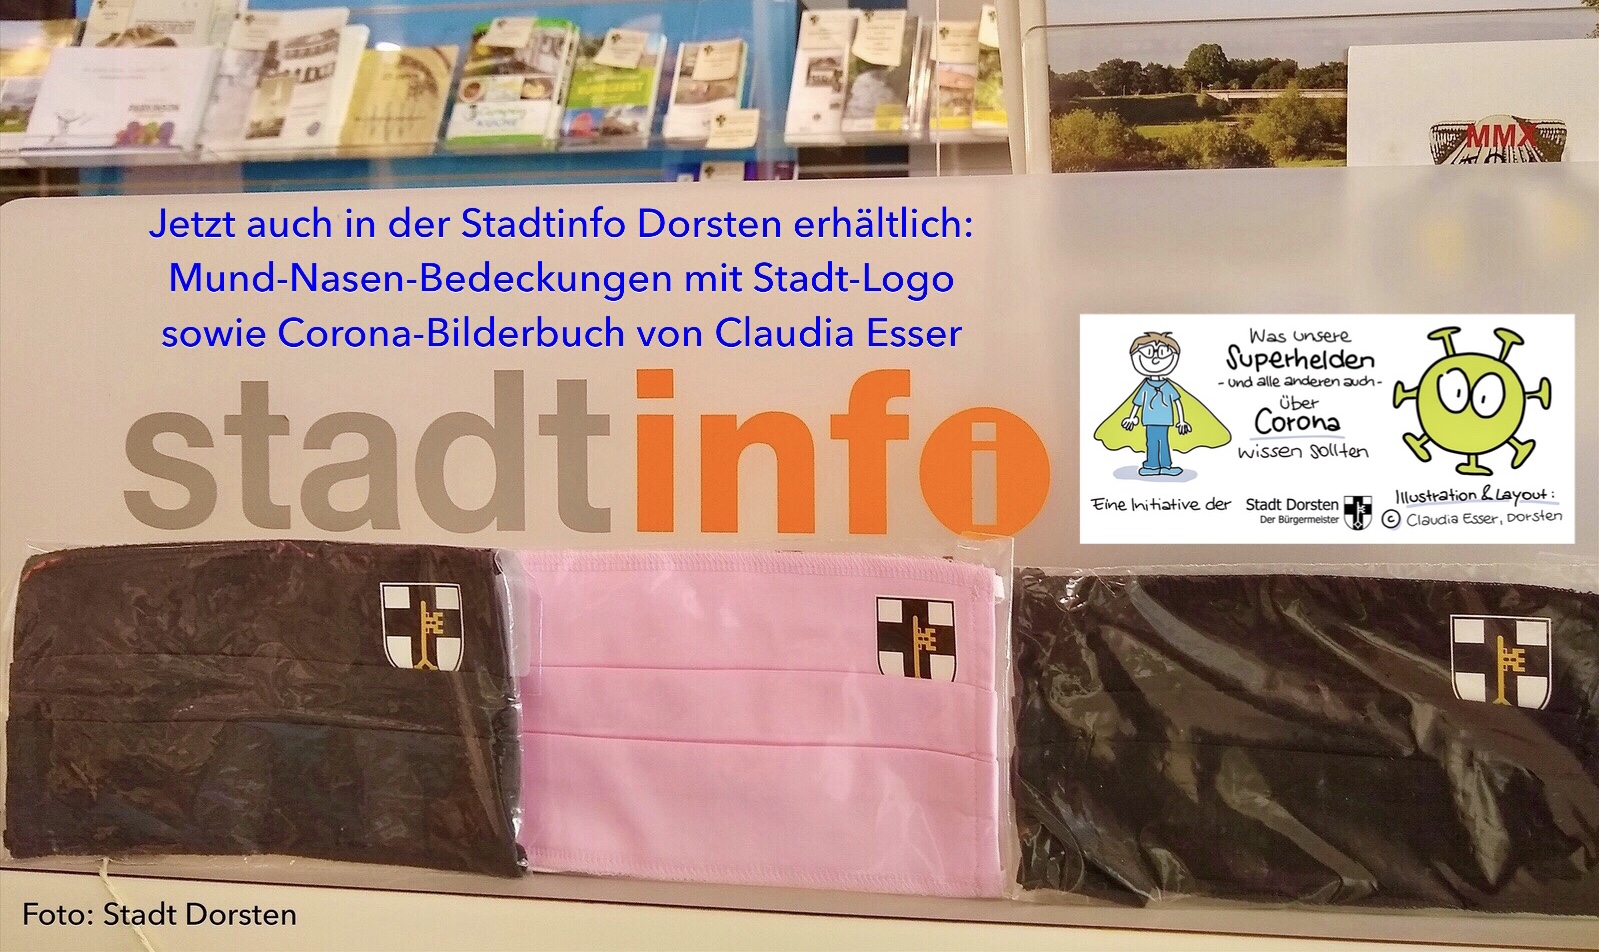 Stadtinfo Dorsten bietet Mund-Nasen-Bedeckungen mit Stadt-Logo sowie Corona-Bilderbuch an